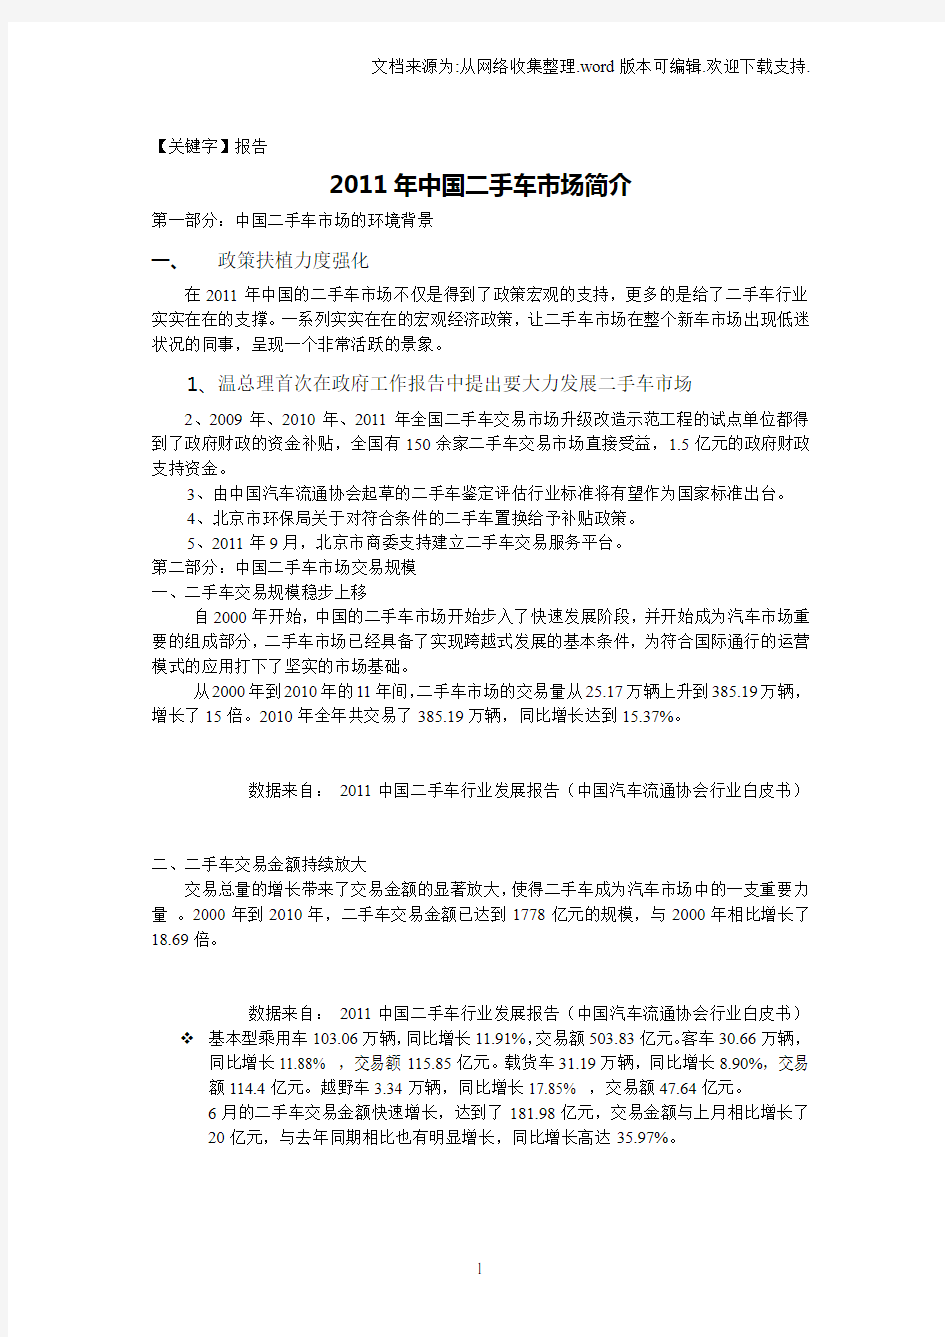 【报告】中国二手车市场研究报告1